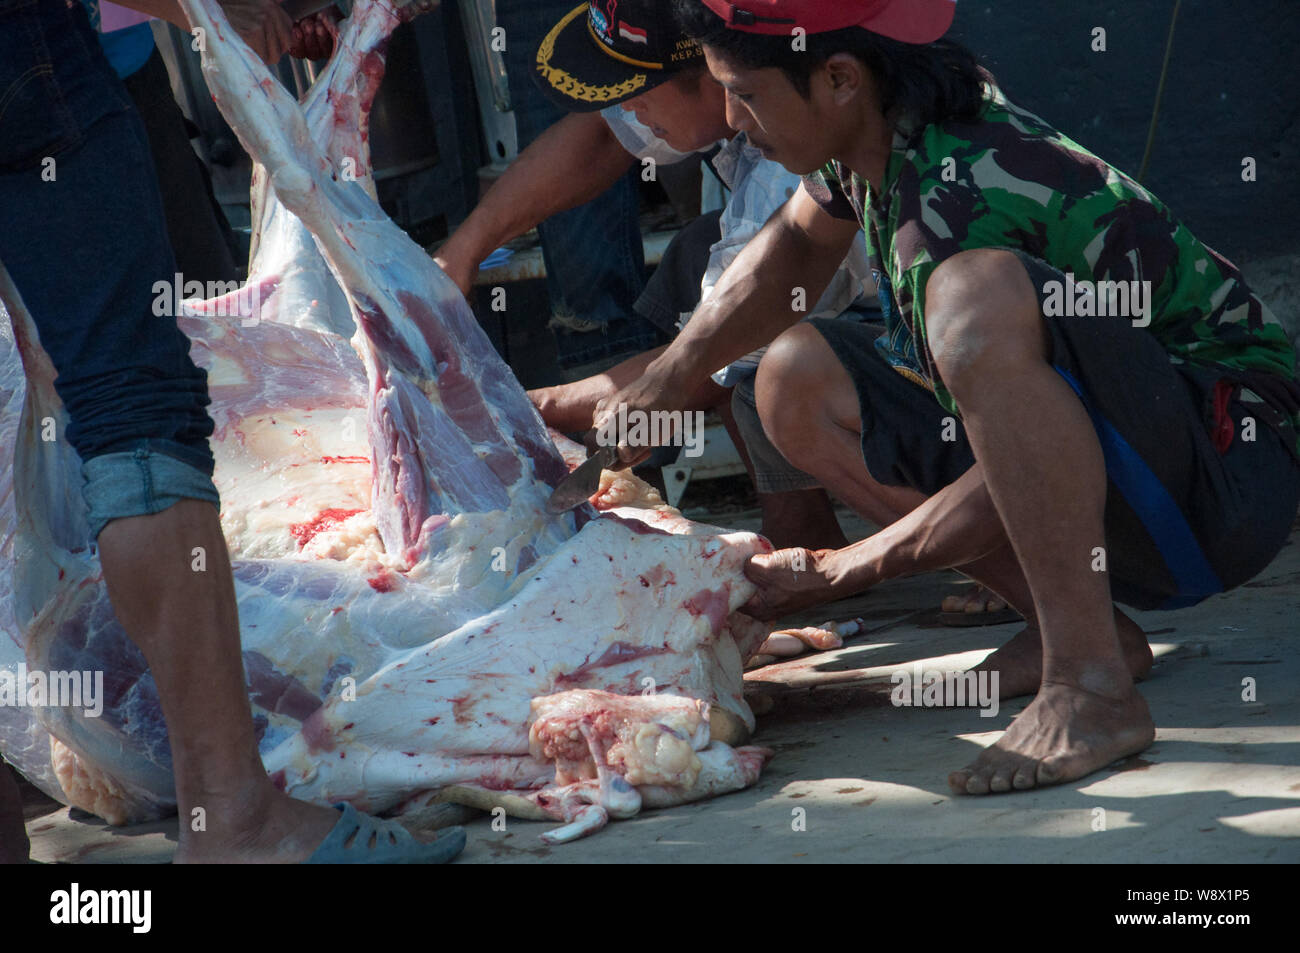 Makassar, Indonesien - 11. August 2019. Mitarbeiter Prozess das Fleisch von sacrificied Kühe während des Eid al-Adha, hat keine bestimmte Zeitdauer und Festival. Indonesischer Muslime und Muslime auf der ganzen Welt feiern das Eid al-Adha, hat am Sonntag auf Montag. Der heilige Tag, auch genannt das "Festival der Opfer', ist die zweite von zwei islamischen Feiertage jedes Jahr weltweit gefeiert Nach dem Eid al-Fitr. Stockfoto